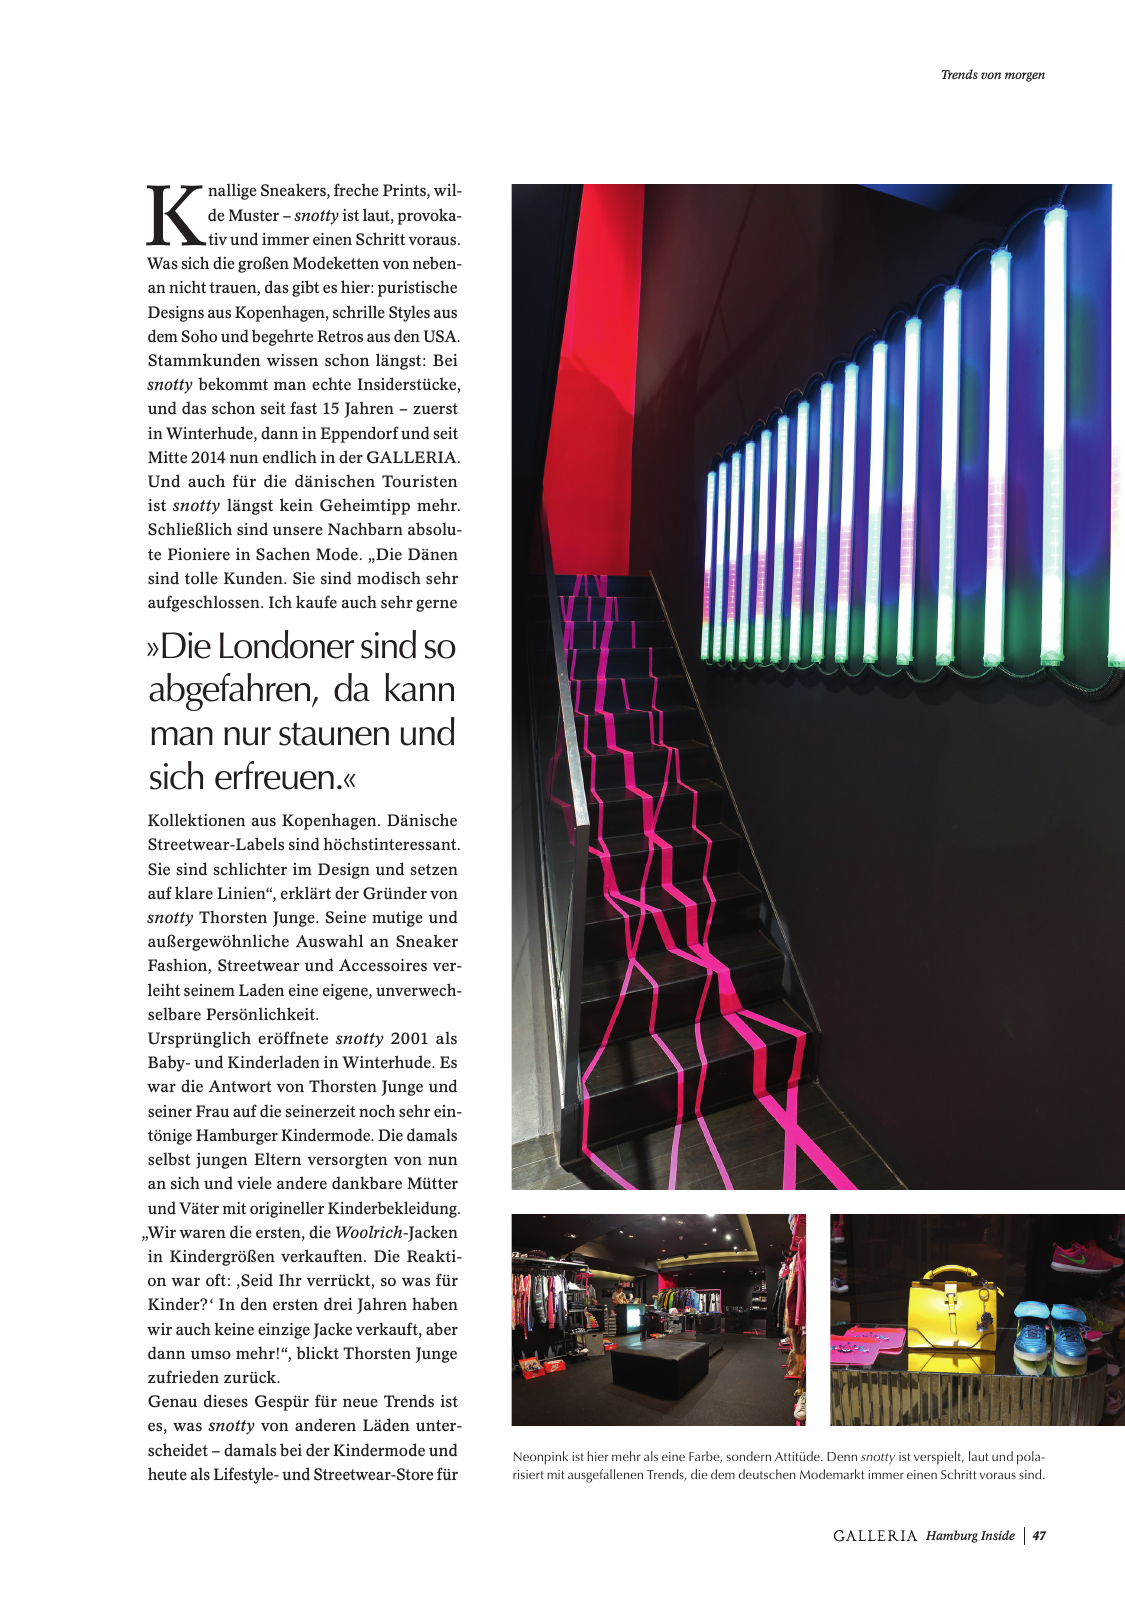 Vorschau GALLERIA Magazin Hamburg Inside 2 Seite 47